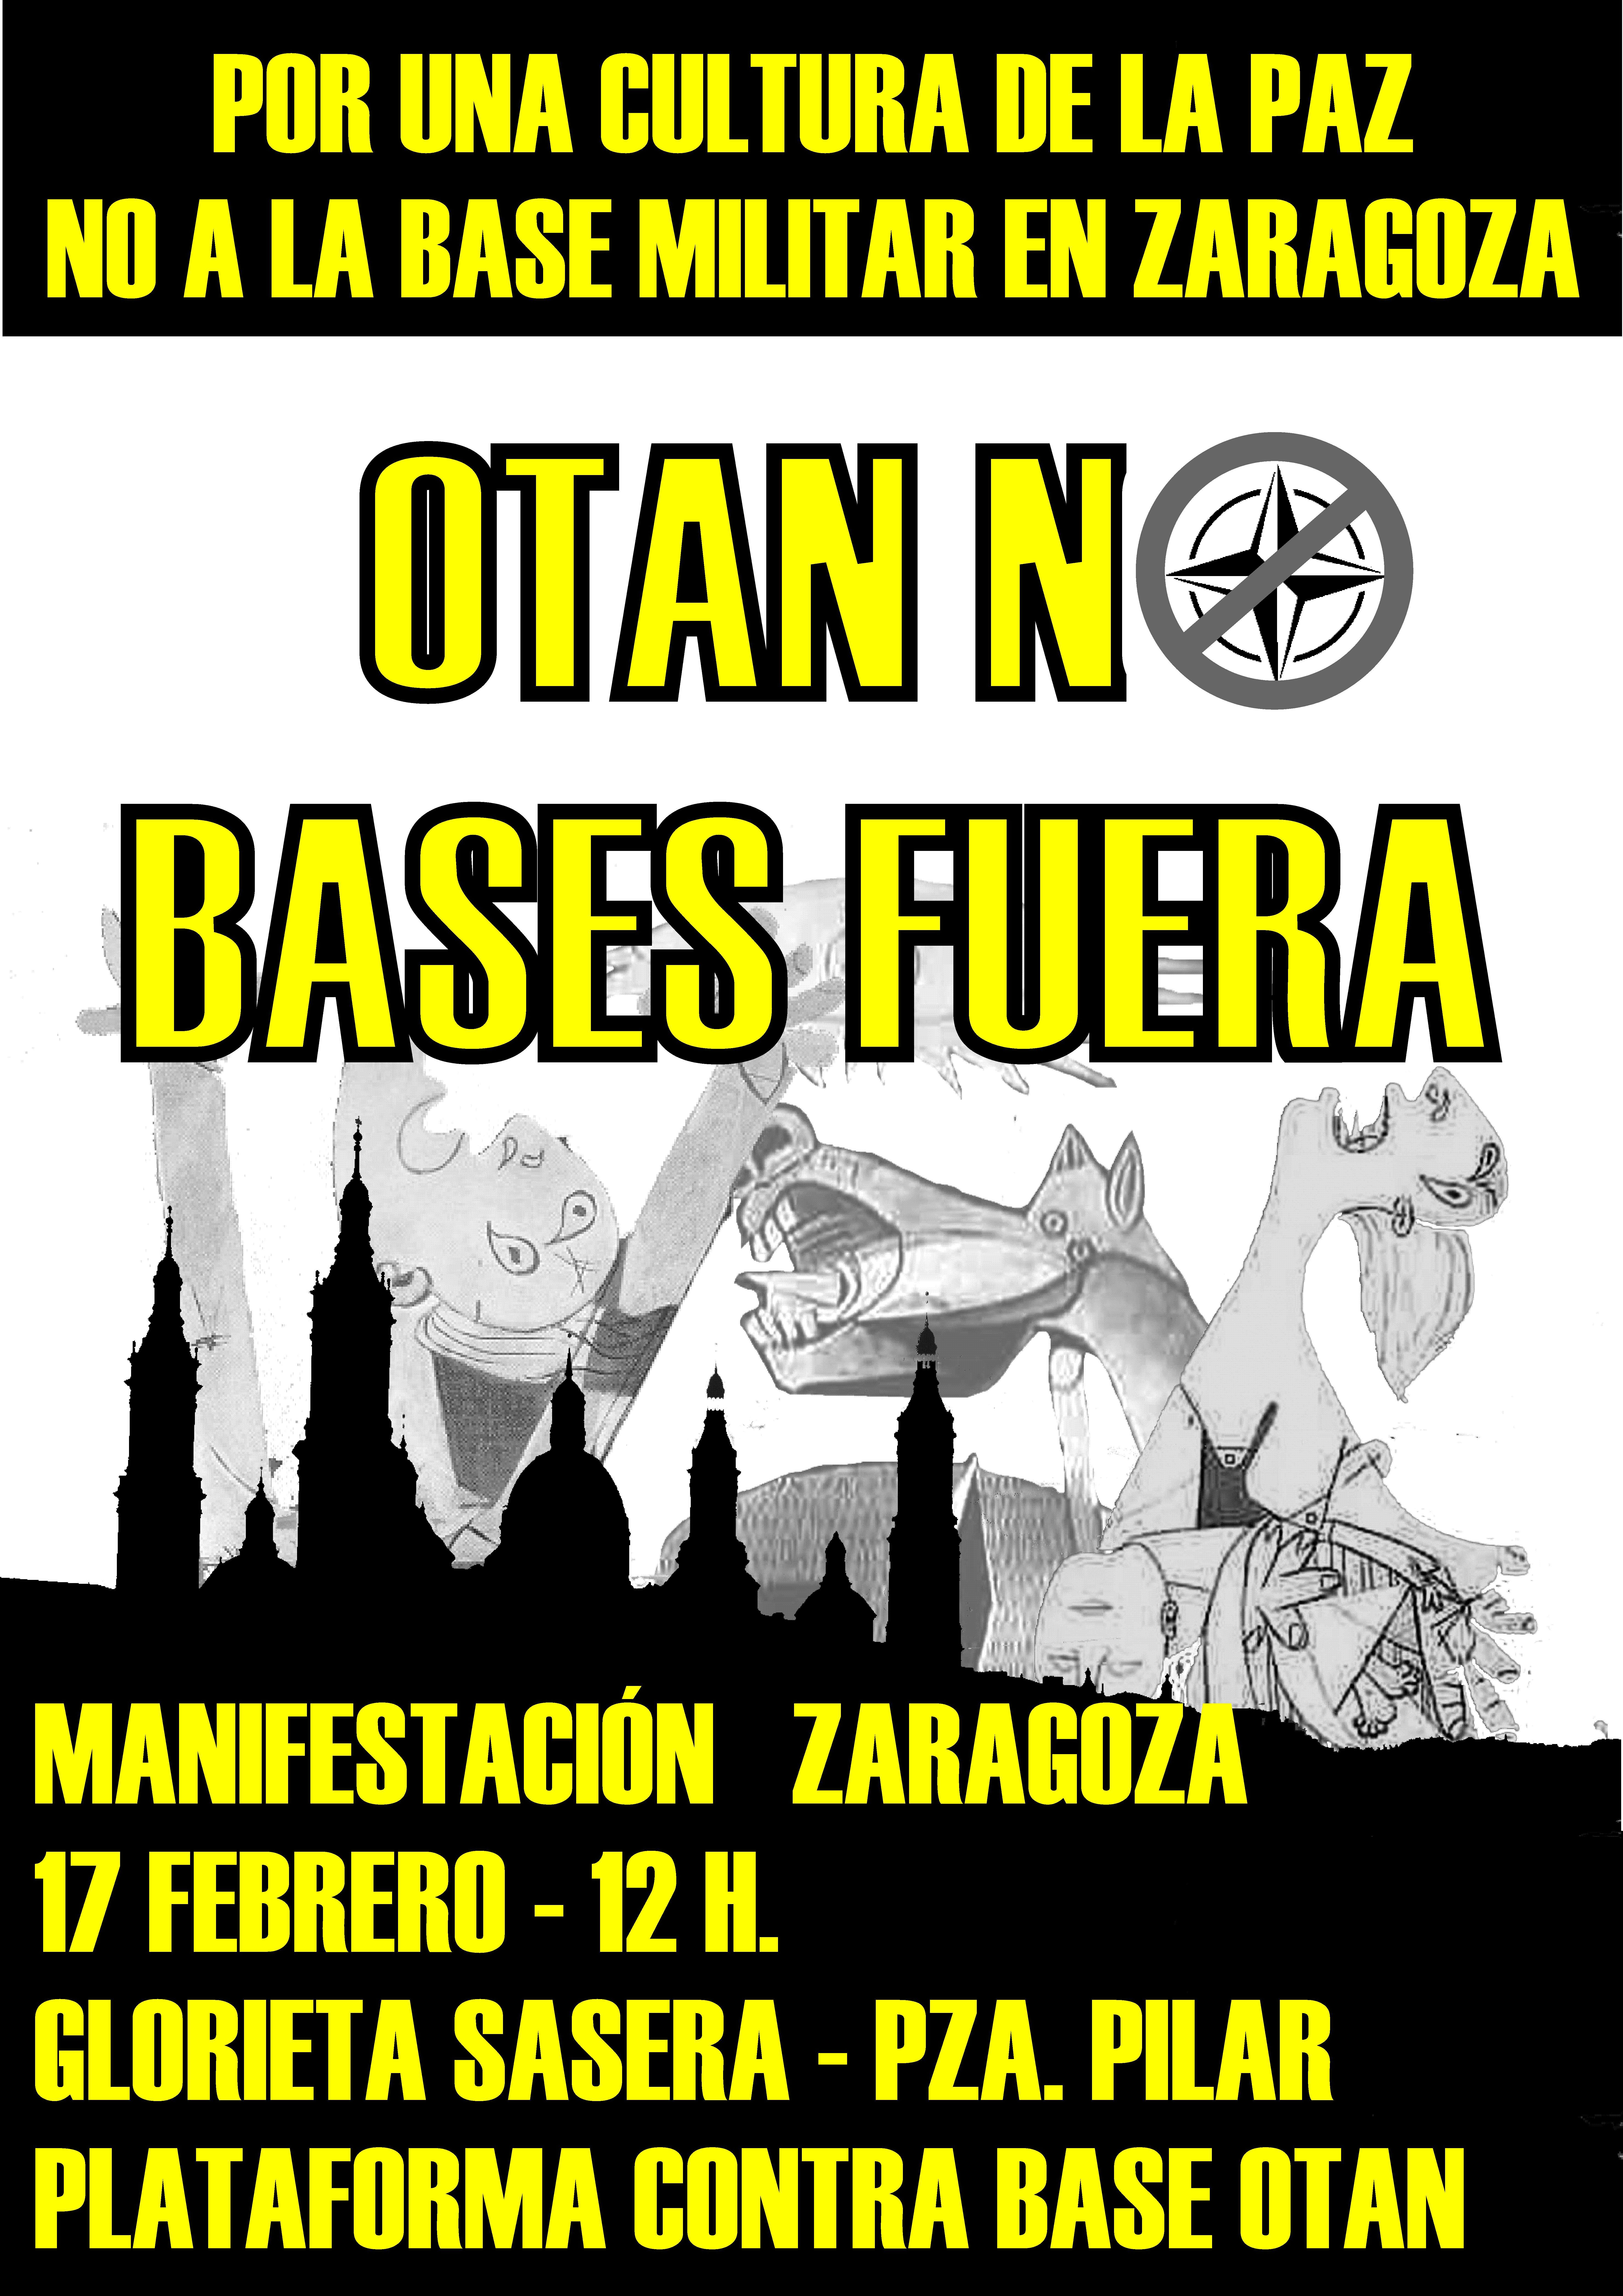 Domingo 17 de febrero a las 12:00 h en la Glorieta de Sasera manifestación contra la base de la OTAN en Zaragoza